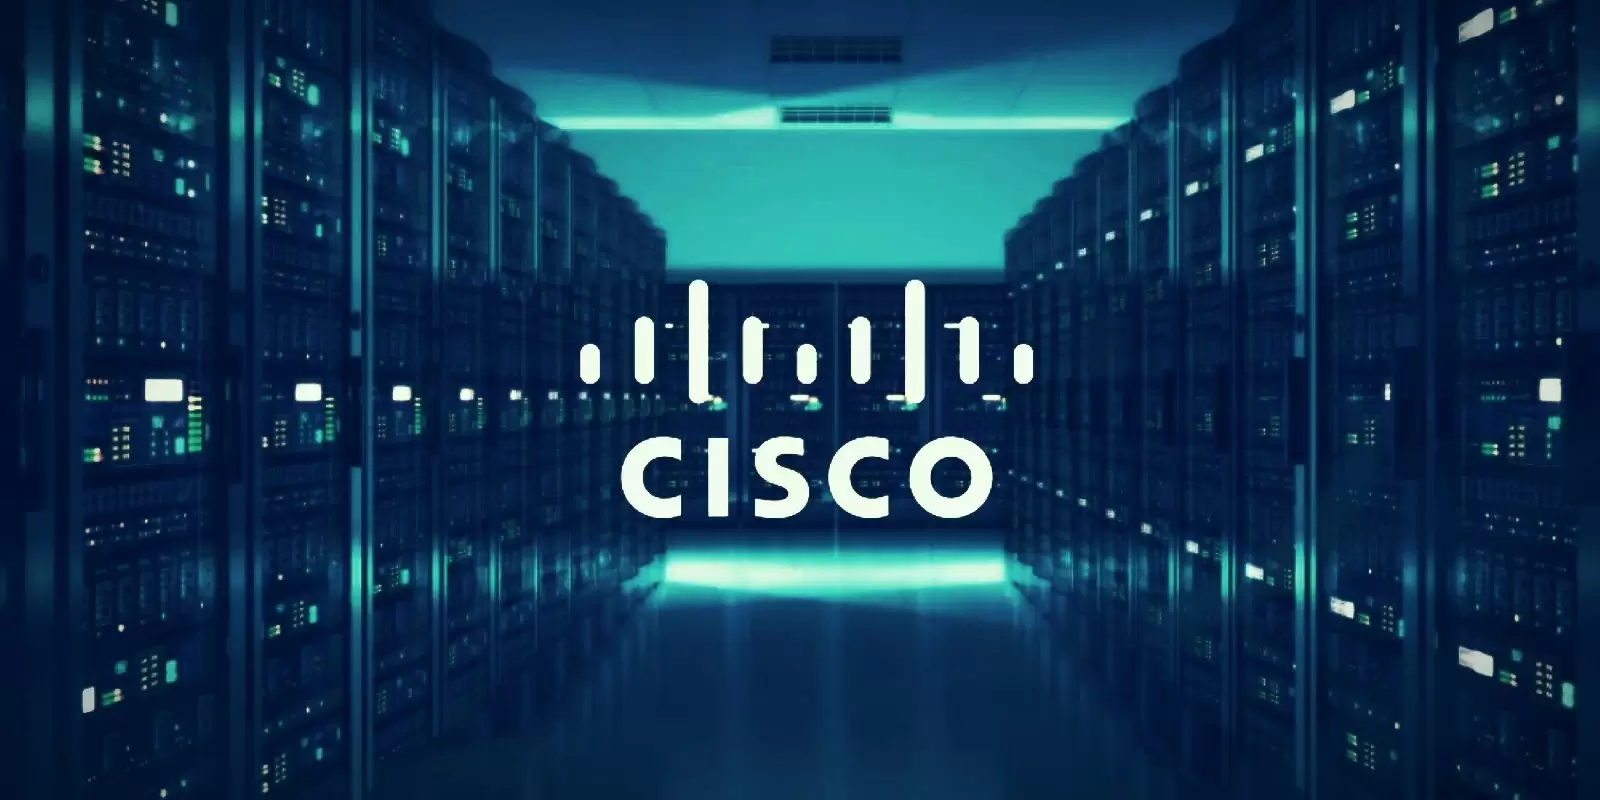 Cisco’ya göre siber güvenlikte en etkili yöntemler